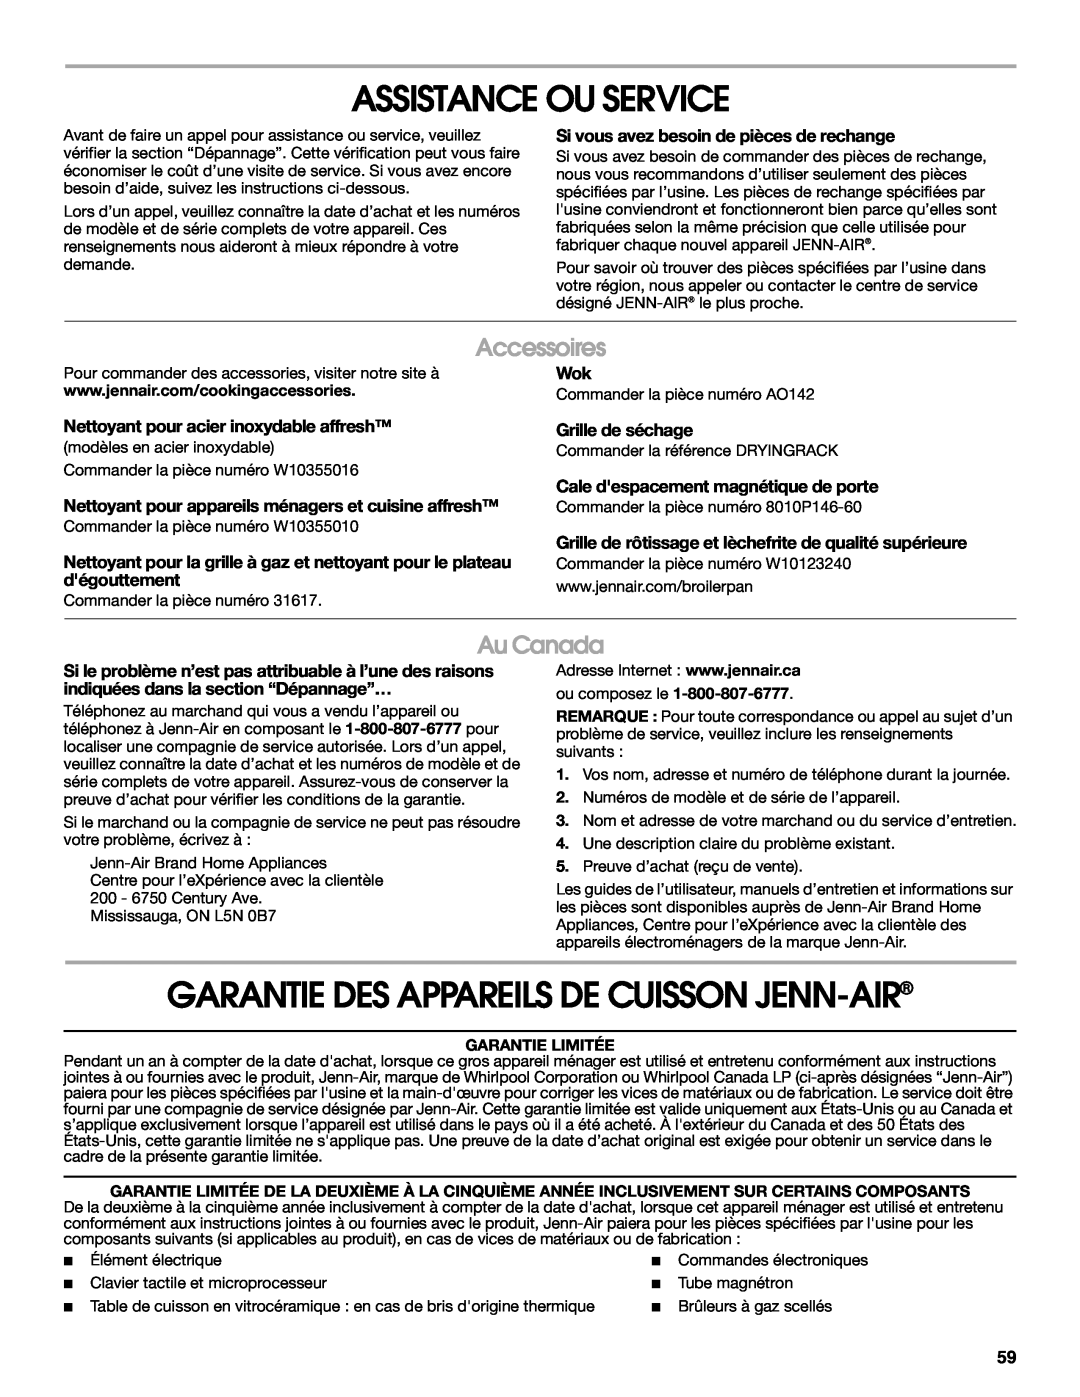 Jenn-Air JDS8860 manual Assistance Ou Service, Garantie Des Appareils De Cuisson Jenn-Air, Accessoires, Au Canada 